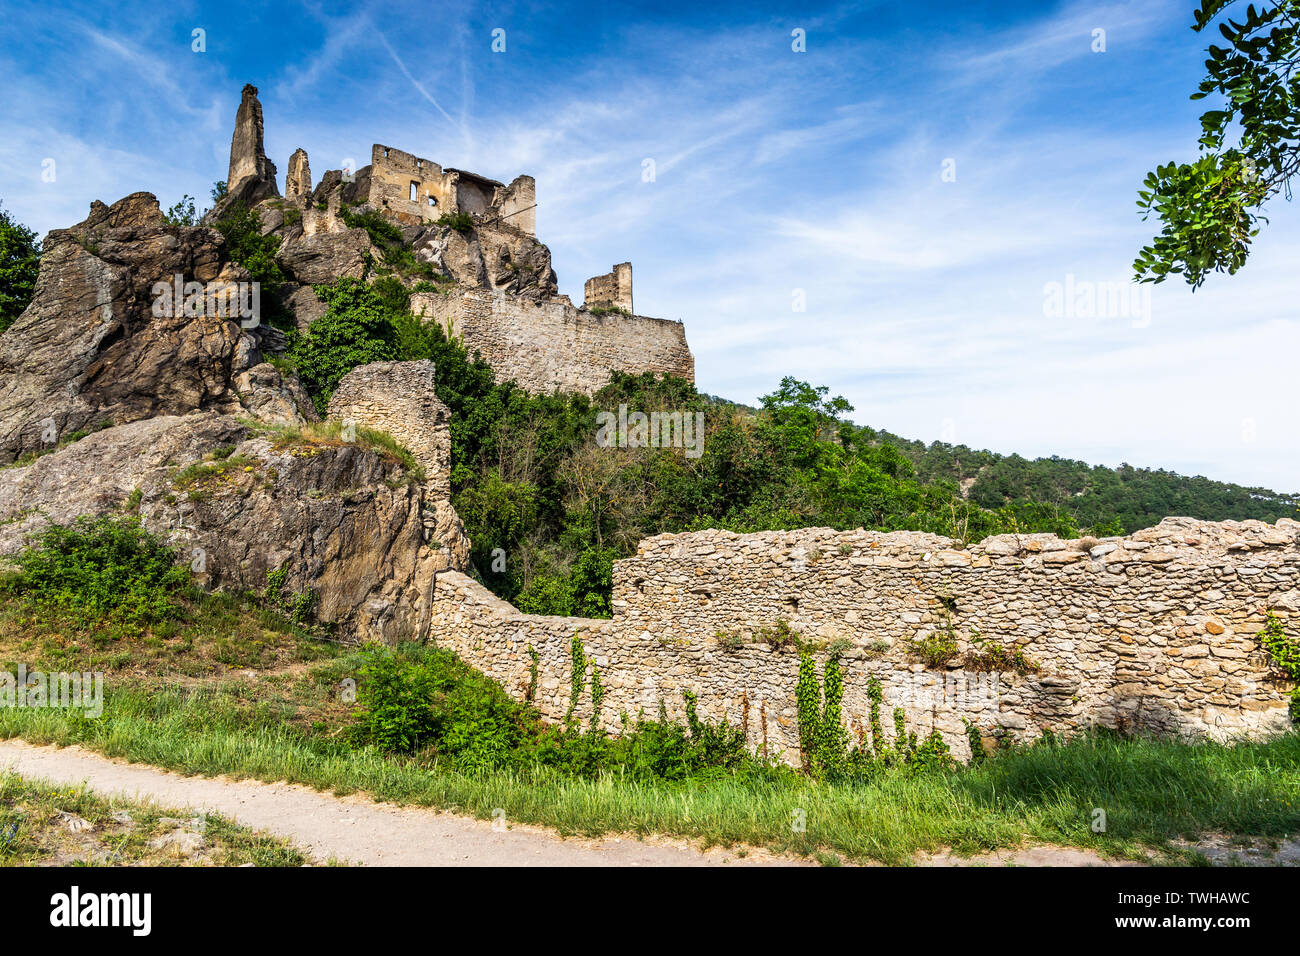 Burgruine Durnstein ist eine zerstörte mittelalterliche Burg in Österreich. Wachau. Stockfoto